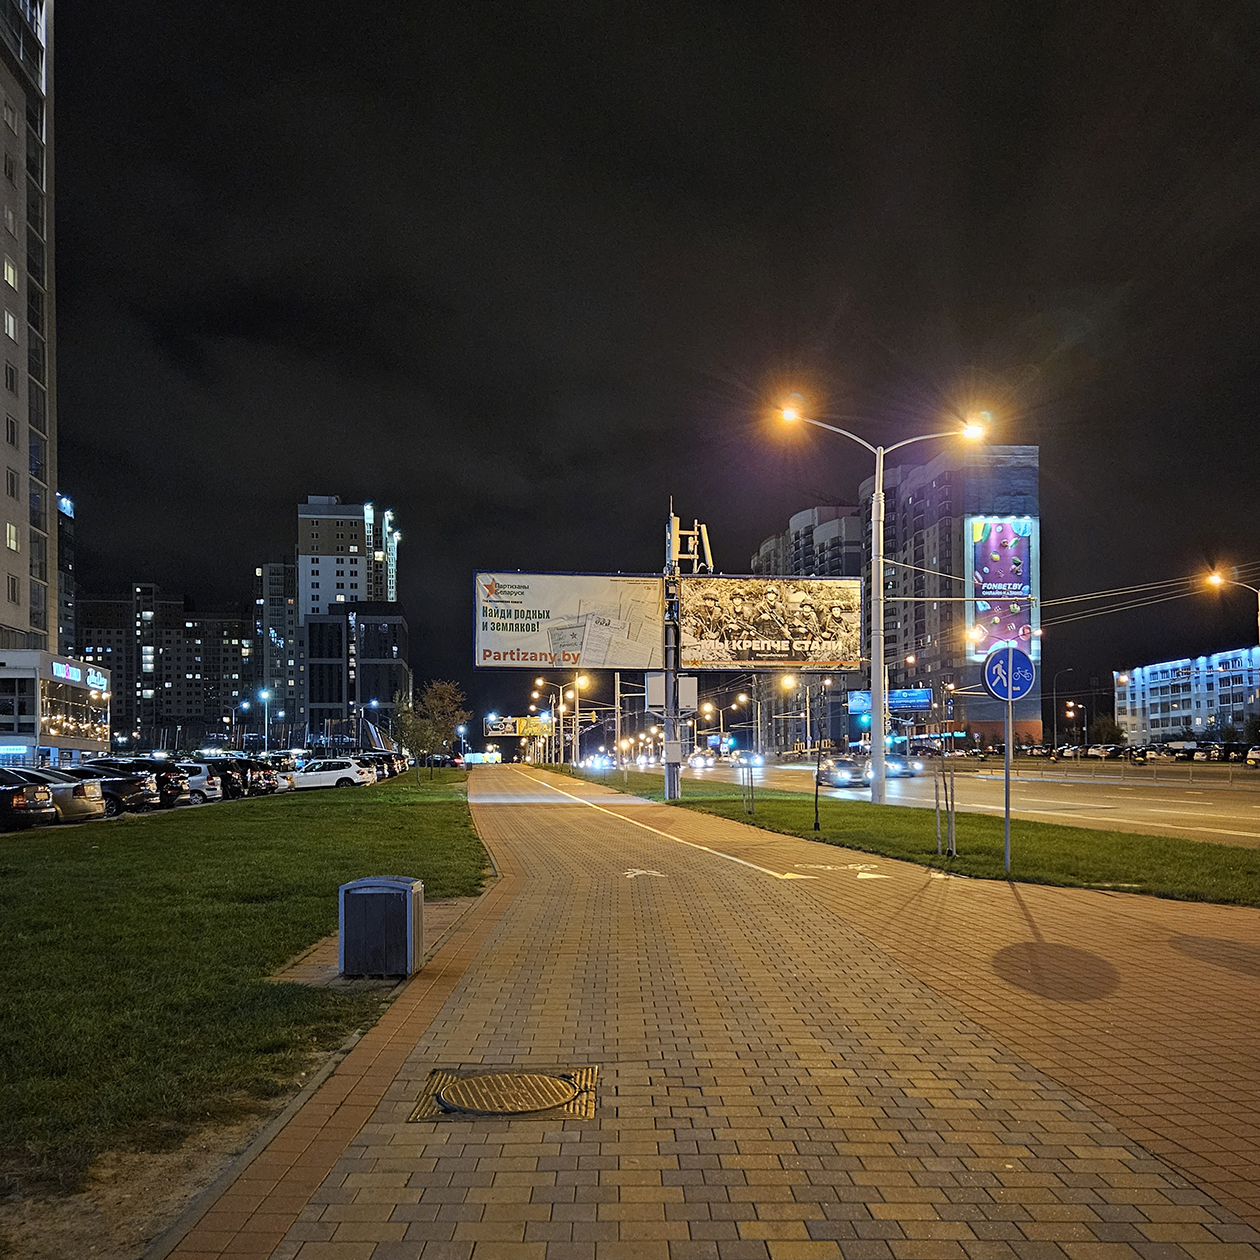 Зимой и осенью в Минске красивее ночью, чем днем, поэтому фоточки вечернего города